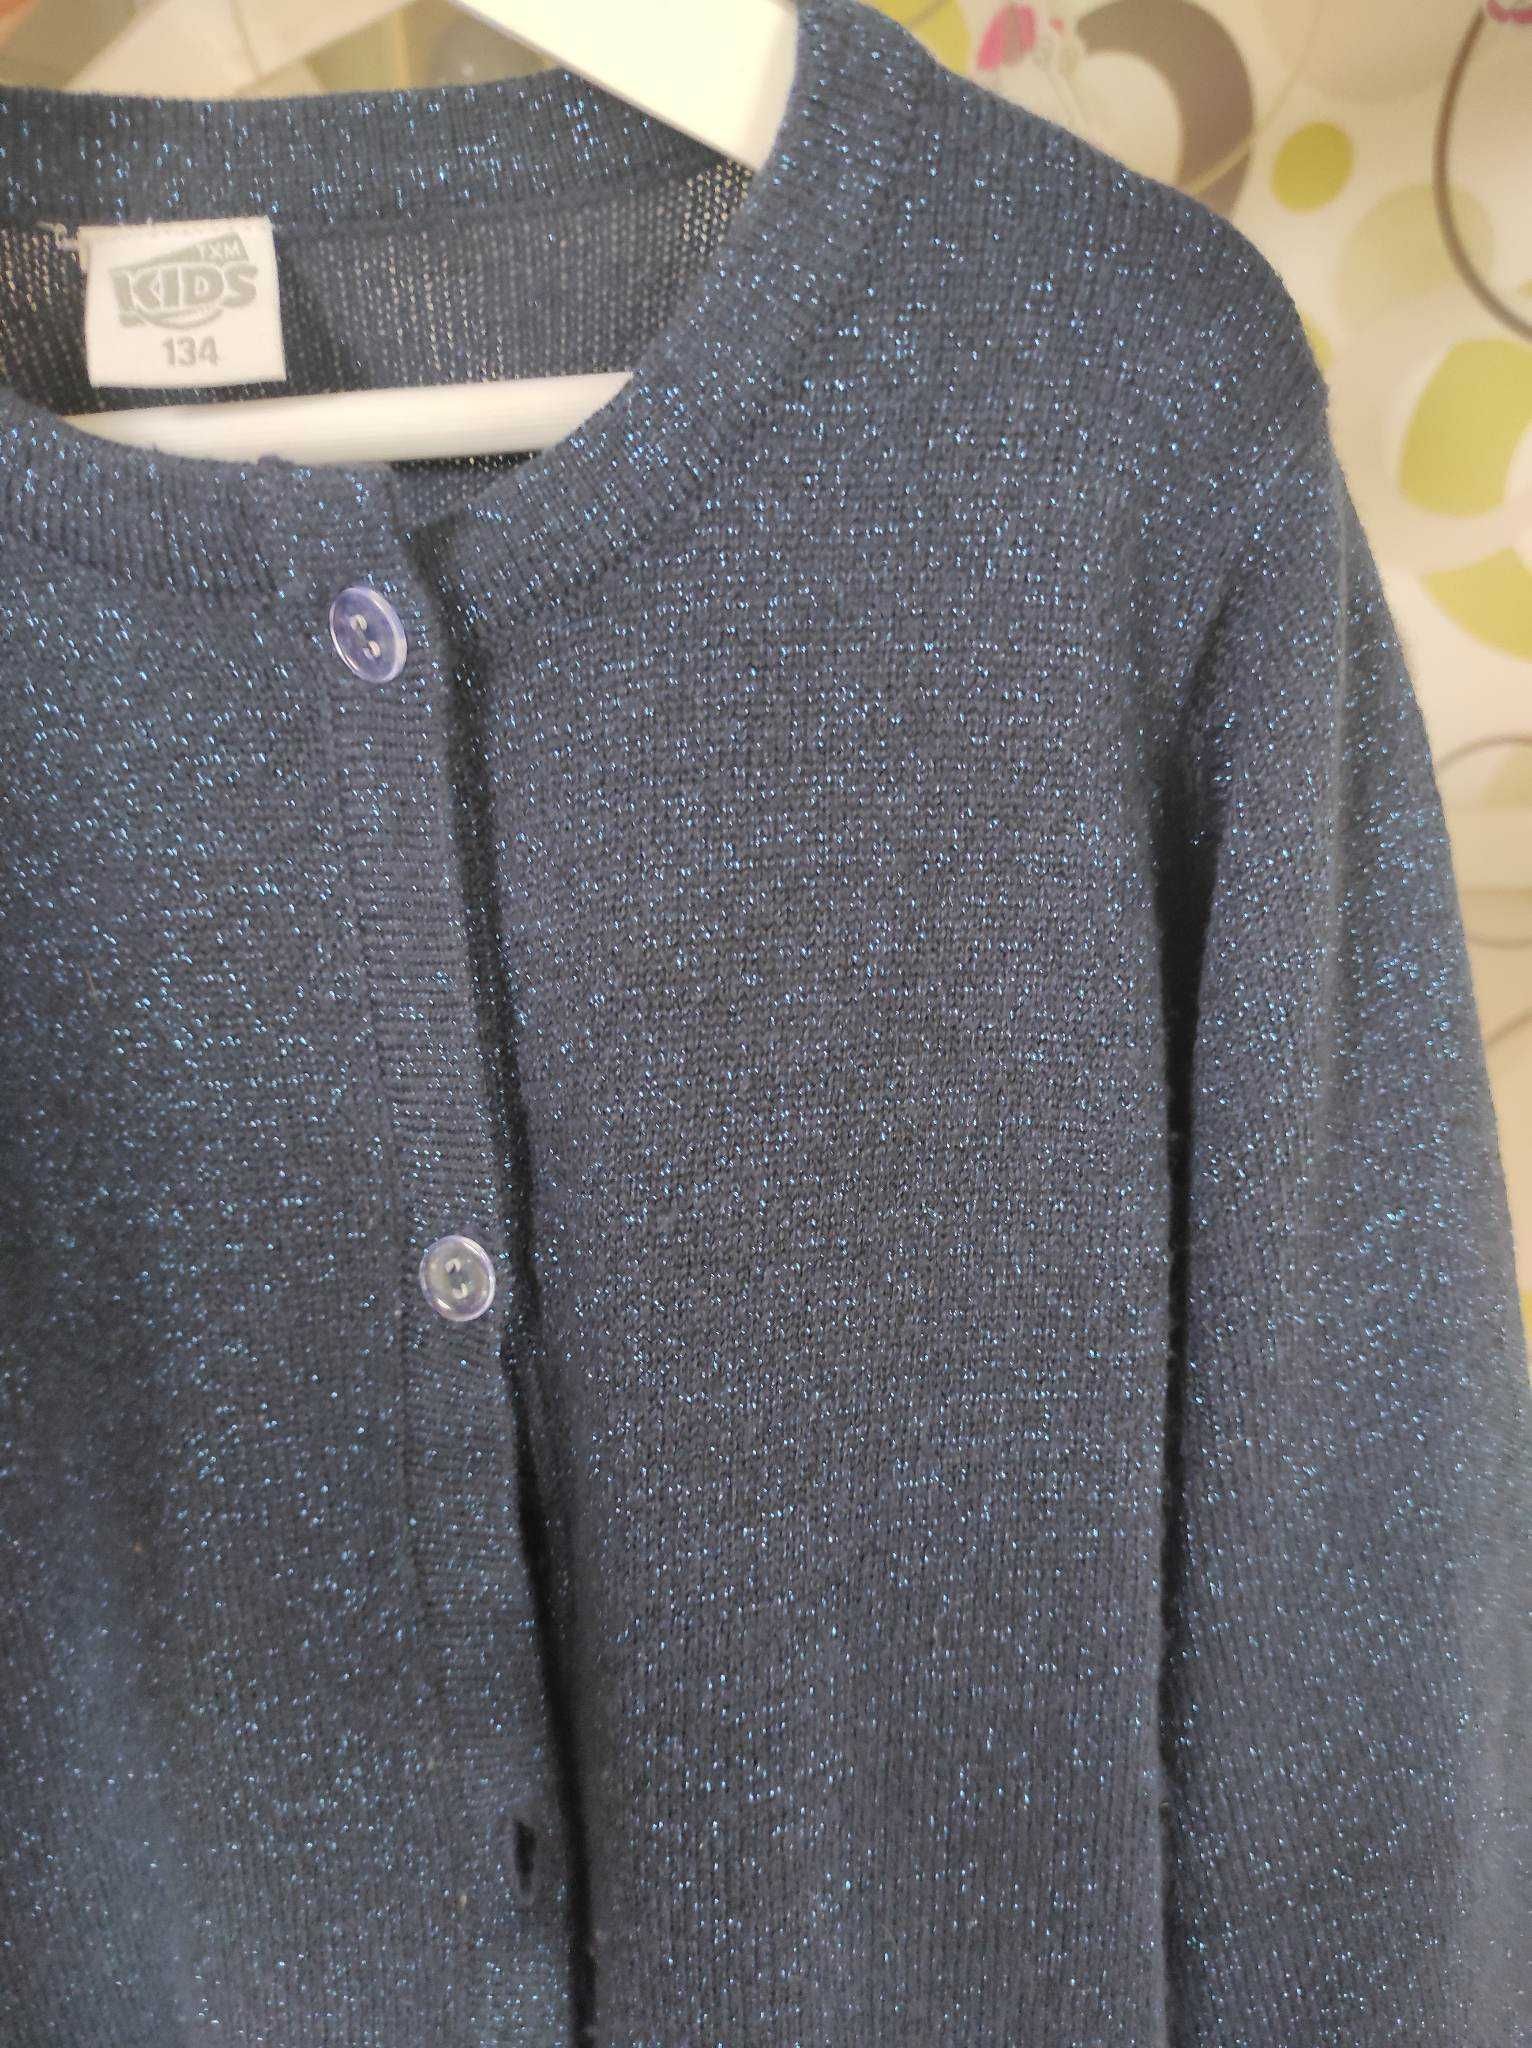 Elegancki sweter sweterek dla dziewczynki r.134 brokatowa nitka